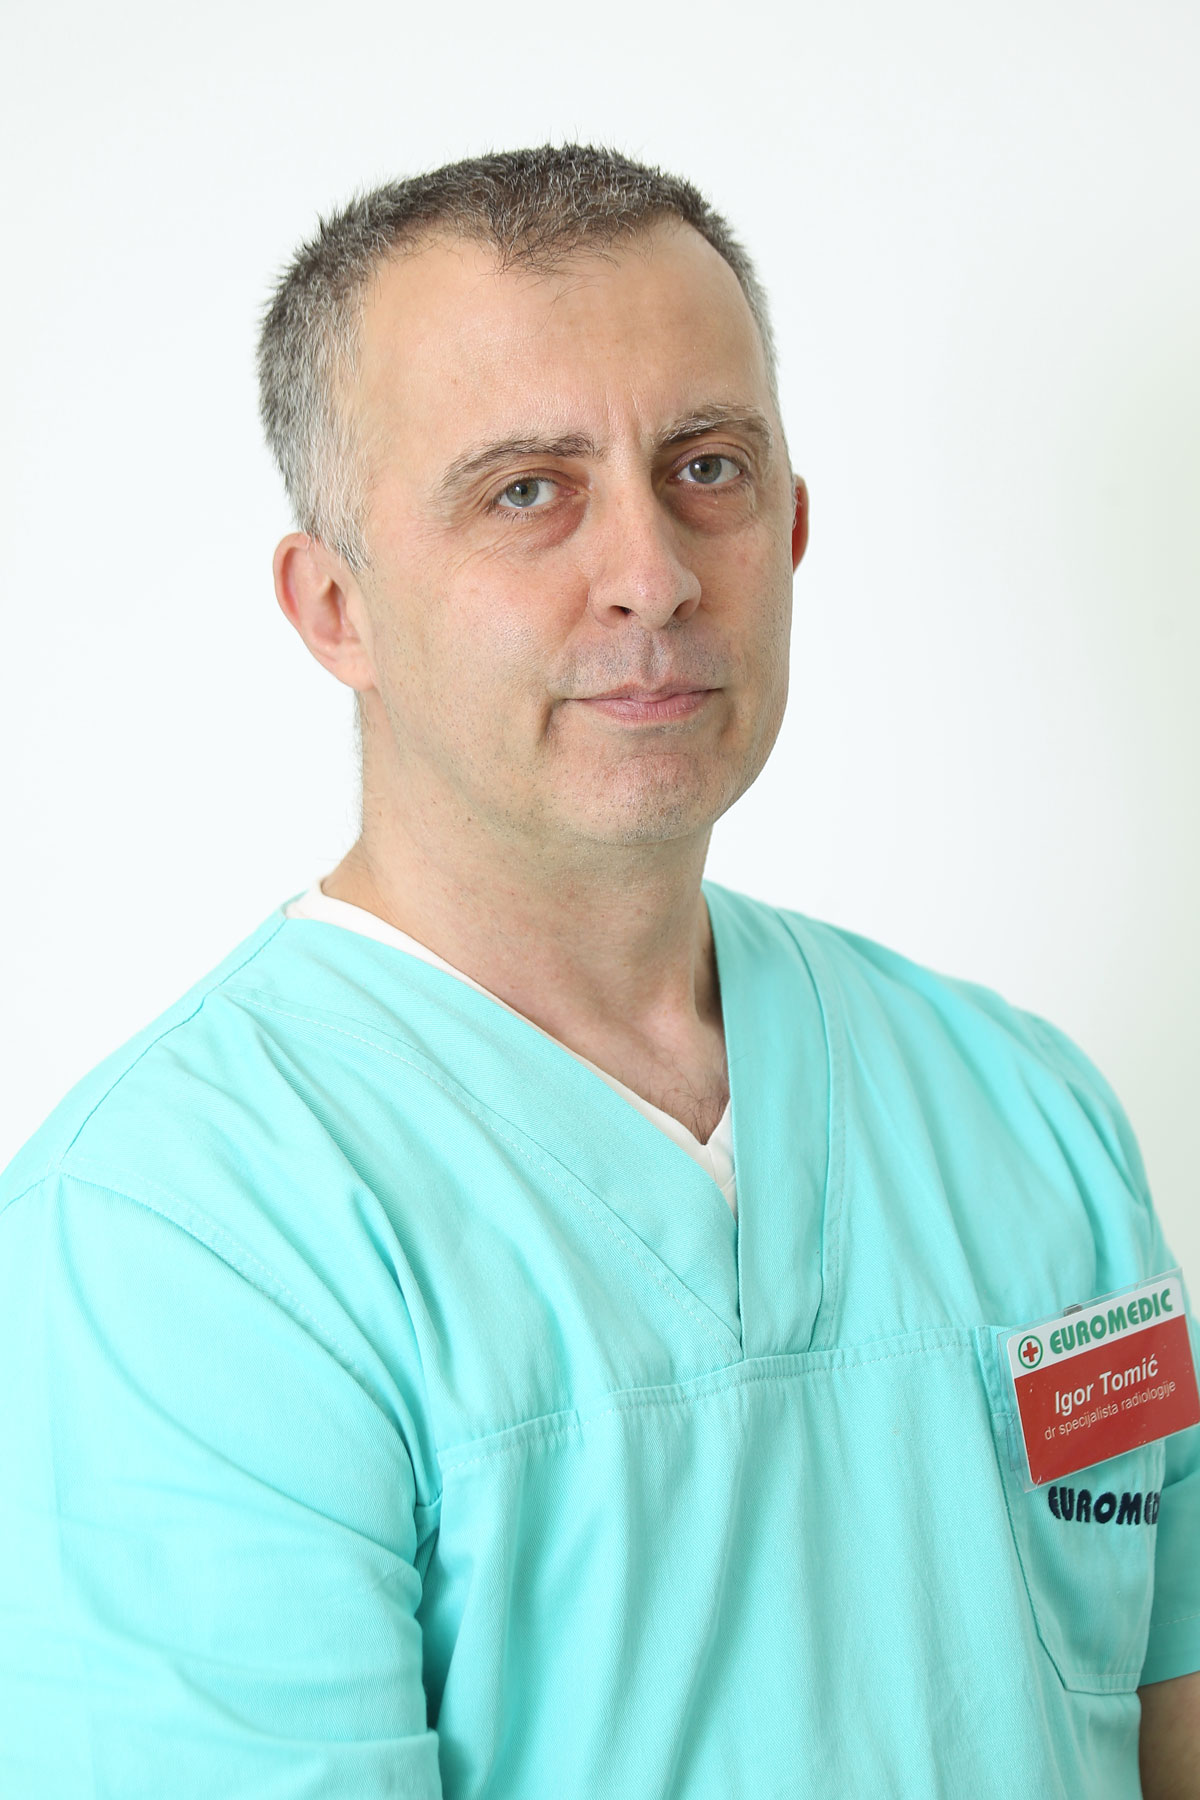 Dr Igor Tomić